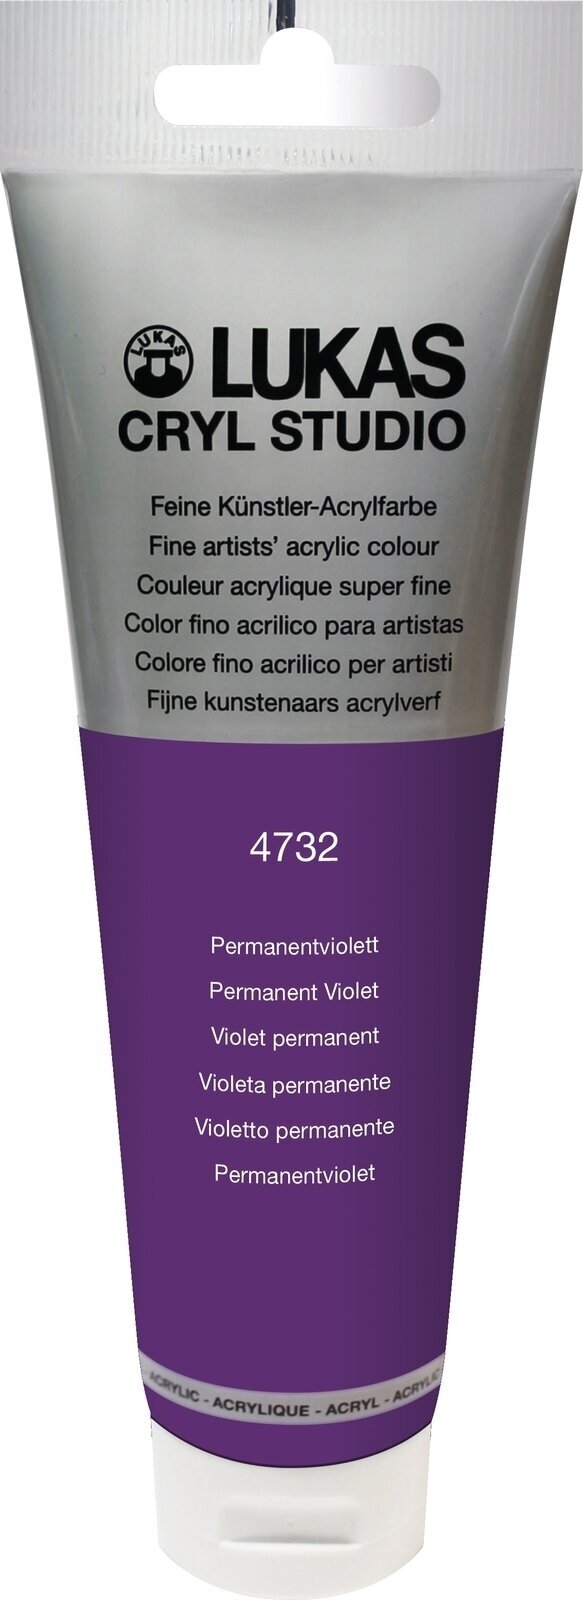 Akrylová farba Lukas Cryl Studio Acrylic Paint Plastic Tube Akrylová farba Permanent Violet 125 ml 1 ks